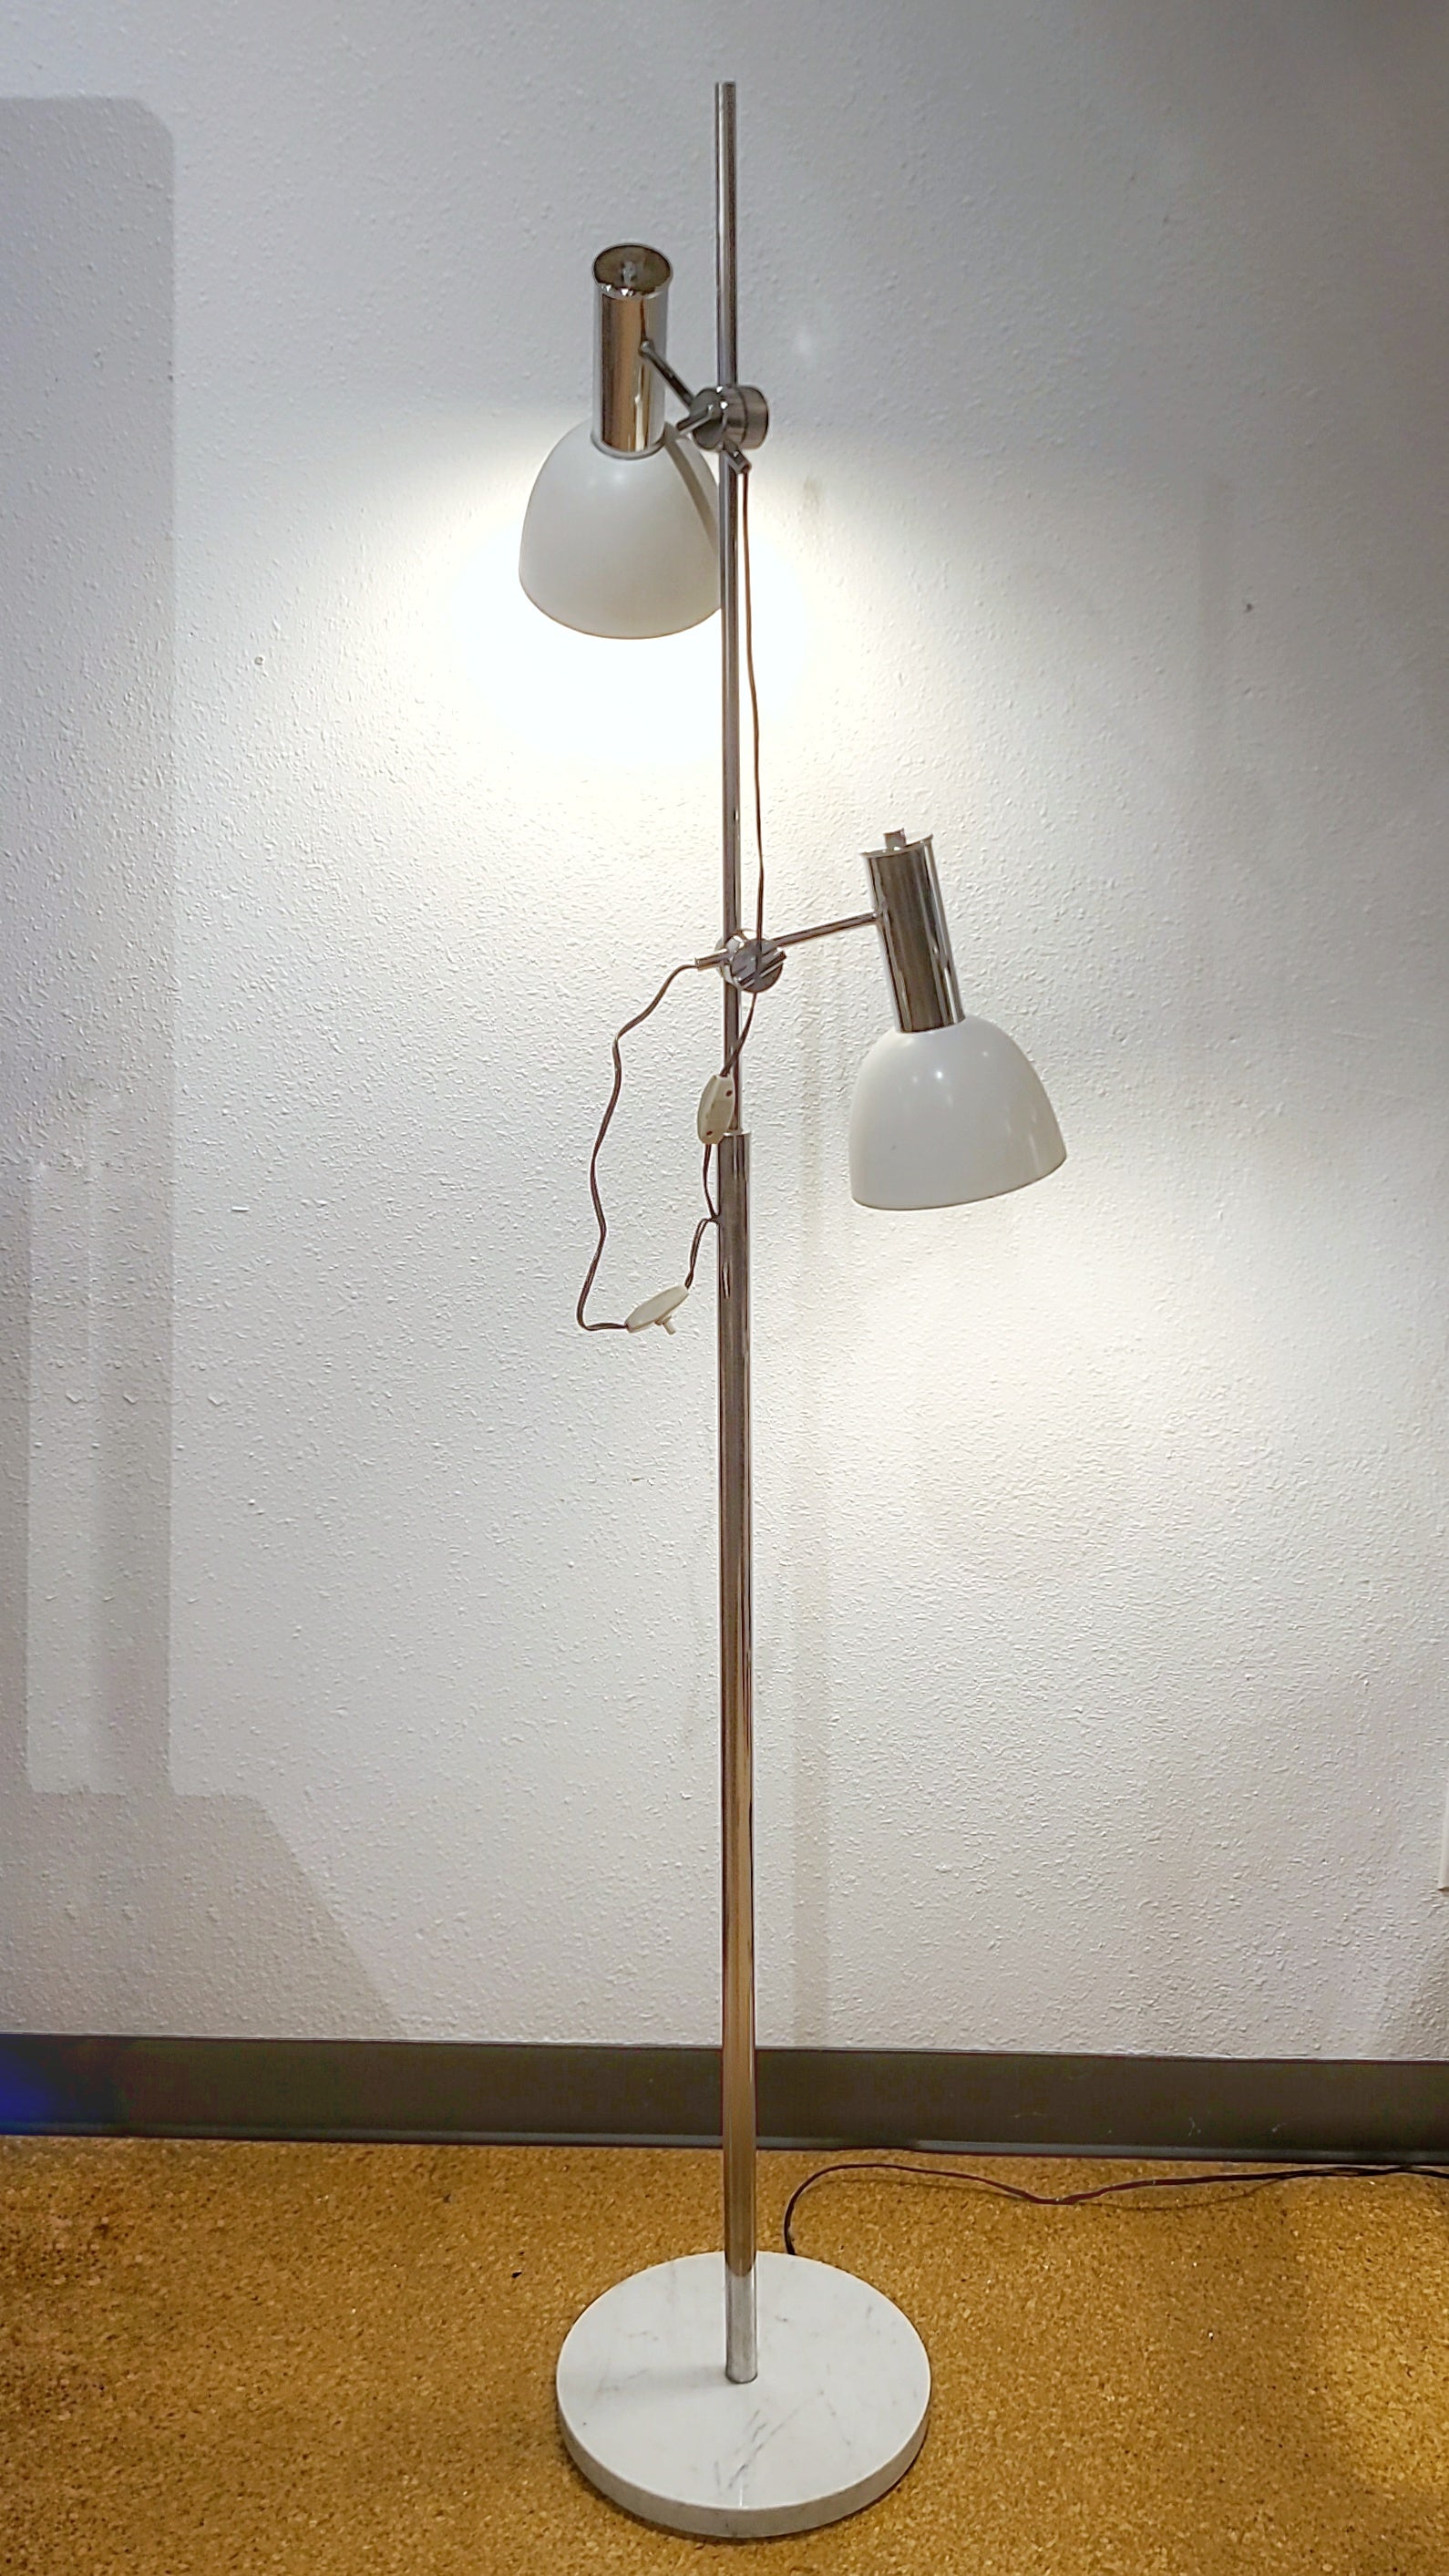 70s ITALIAN CHROME DOUBLE-HEADED FLOOR LAMP WITH MARBLE BASE